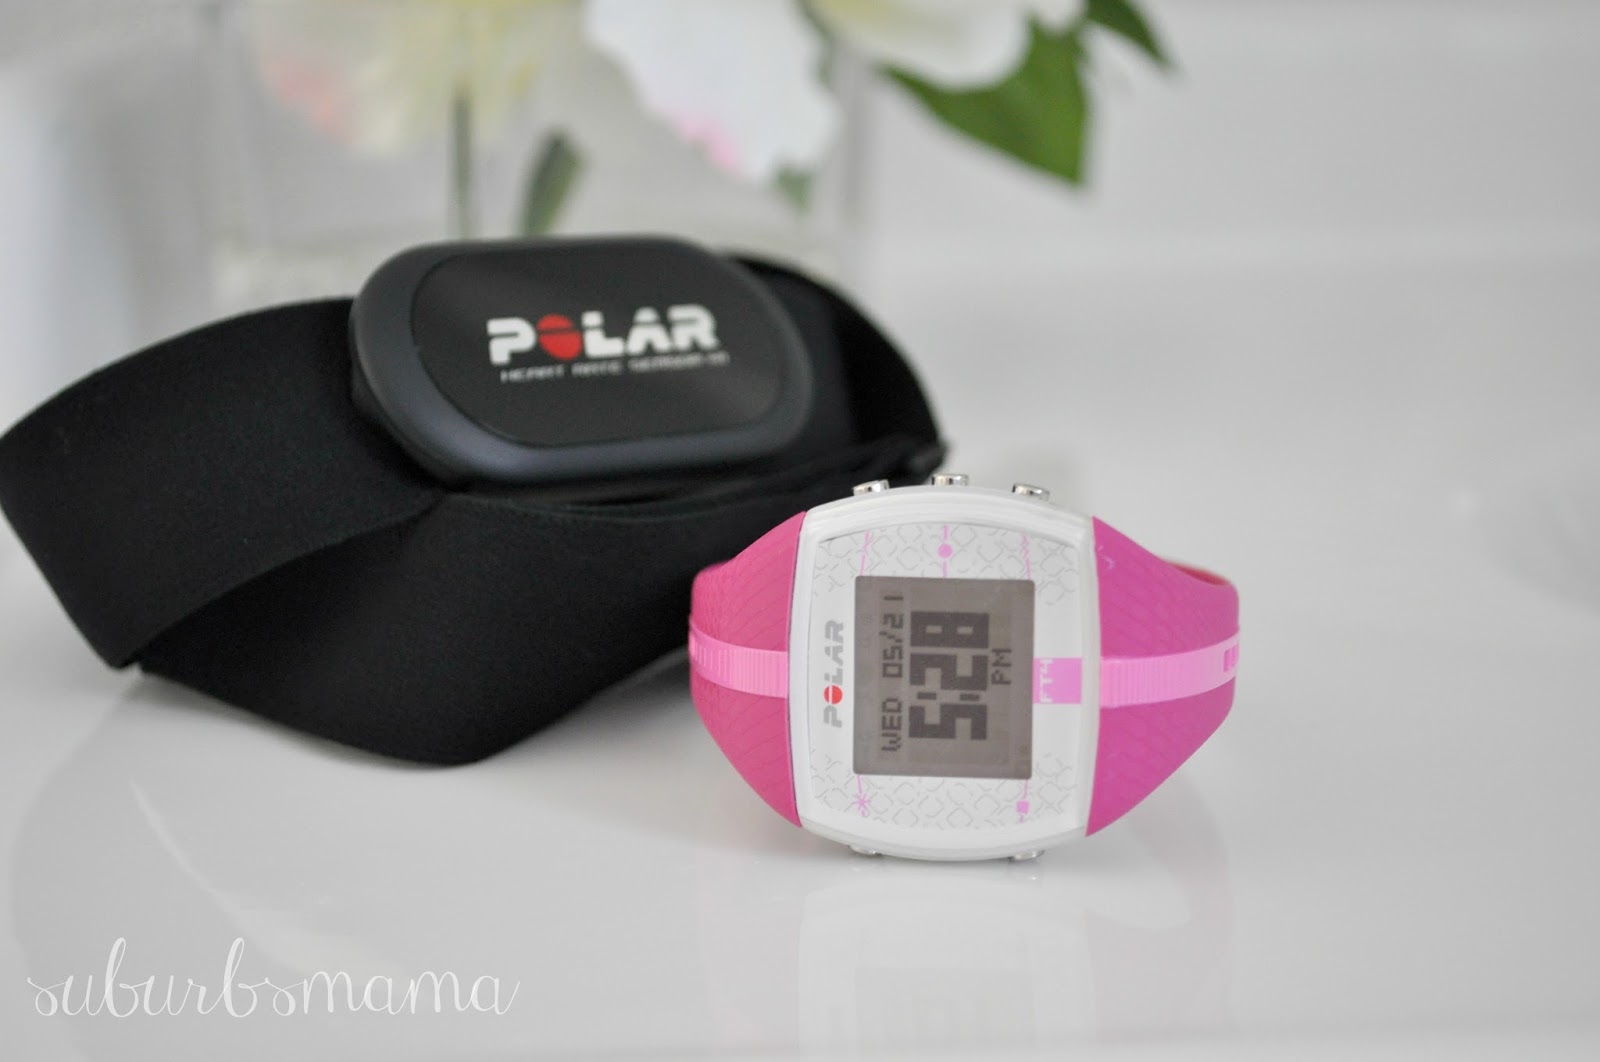 polar calorie counter watch